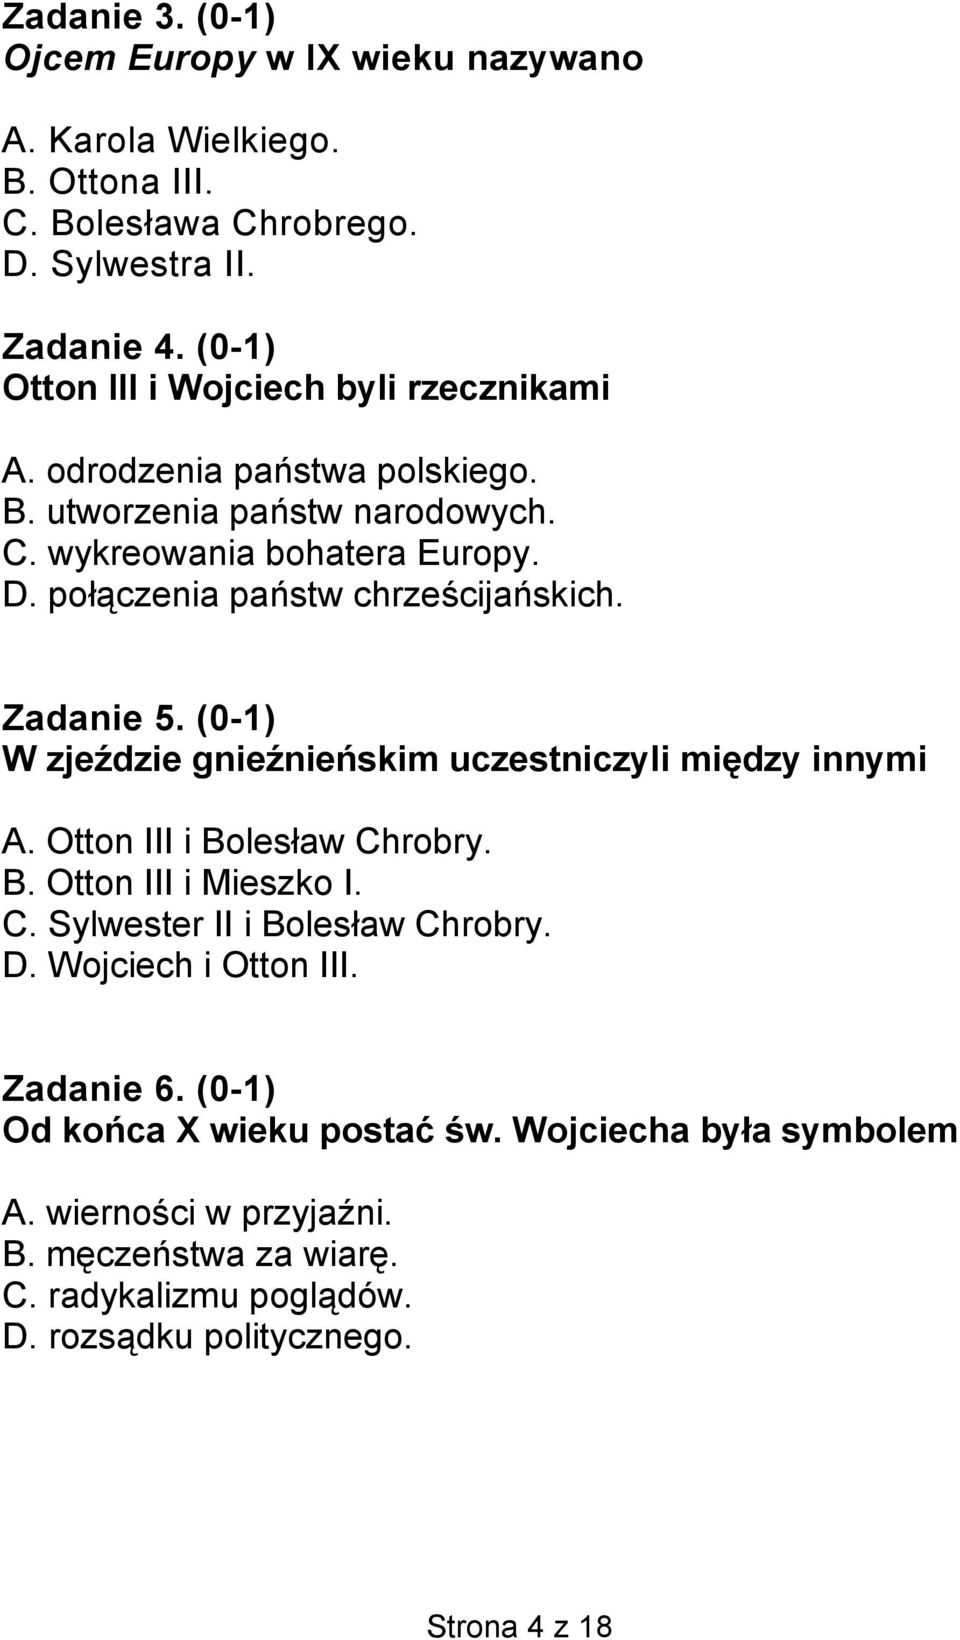 połączenia państw chrześcijańskich. Zadanie 5. (0-1) W zjeździe gnieźnieńskim uczestniczyli między innymi A. Otton III i Bolesław Chrobry. B. Otton III i Mieszko I. C. Sylwester II i Bolesław Chrobry.